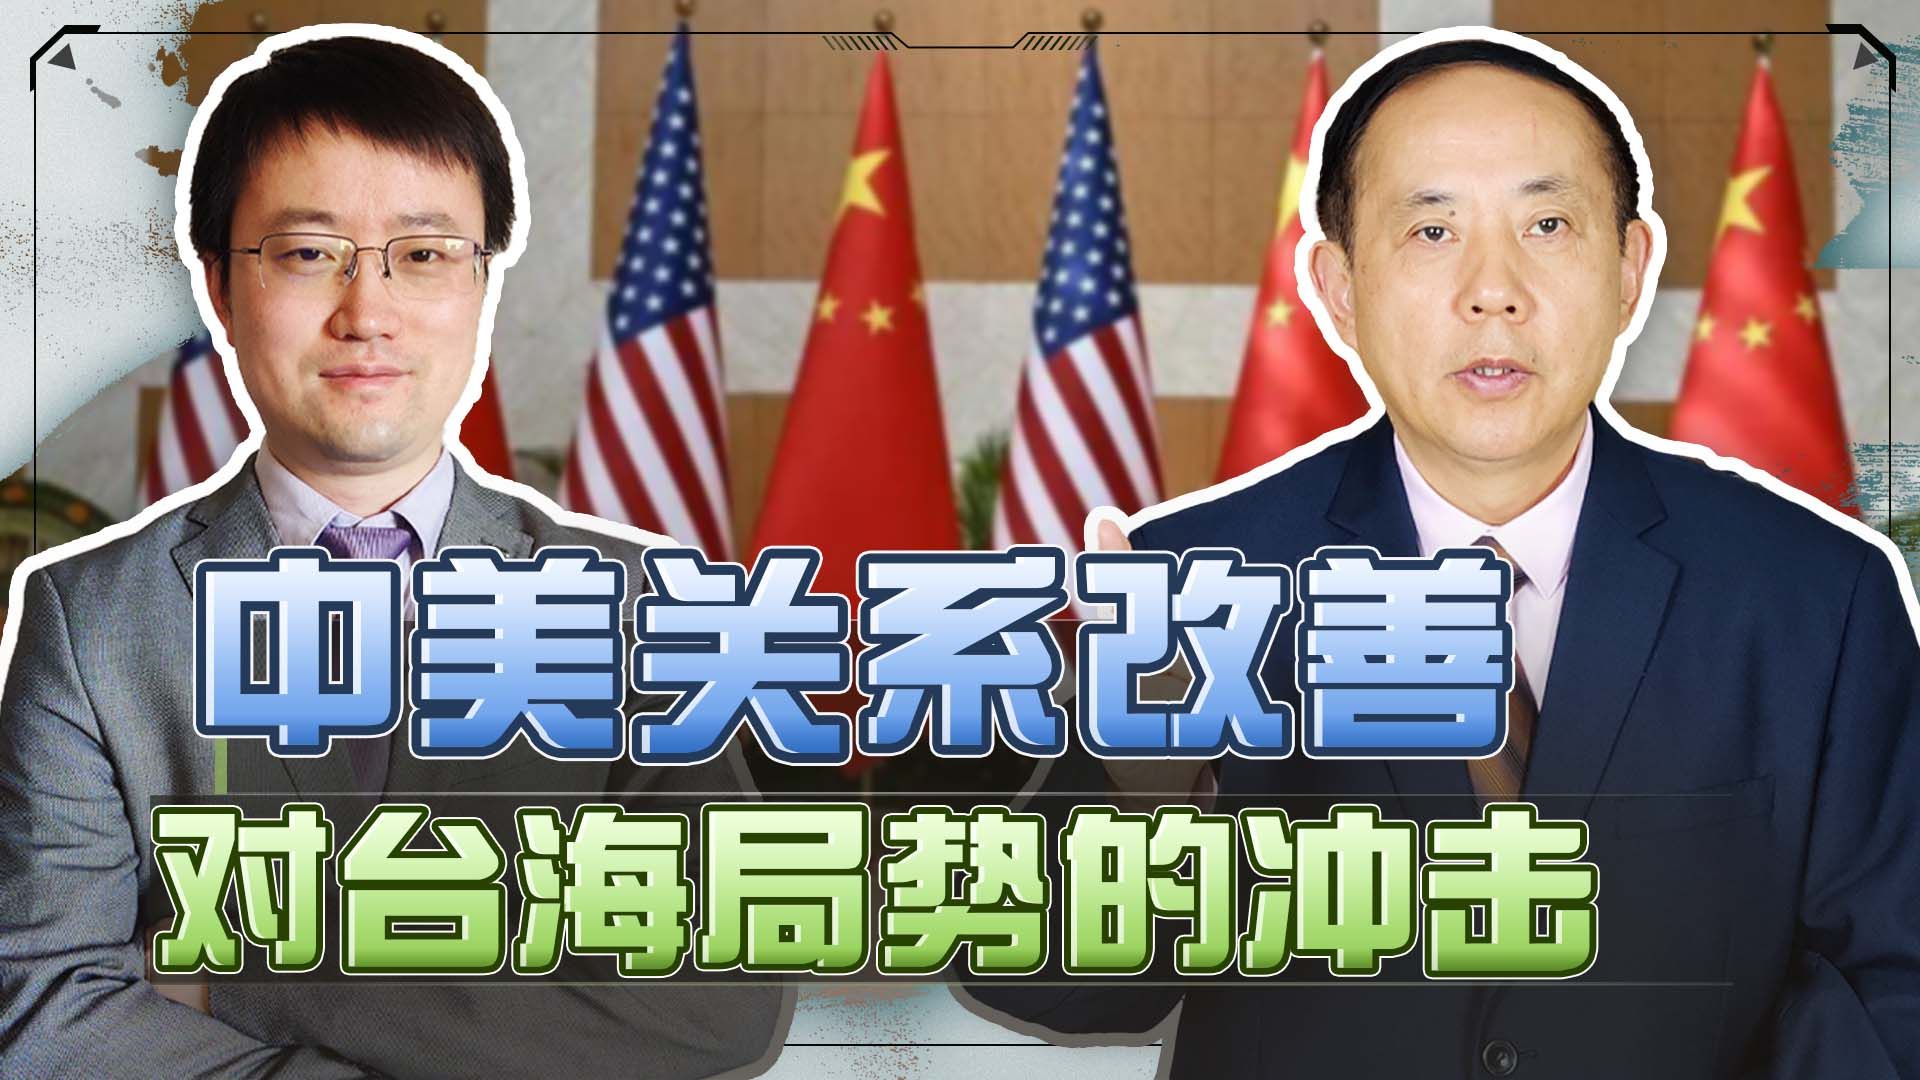 中国外长秦刚与美国国务卿布林肯握手后开始举行会谈 - 2023年6月18日, 俄罗斯卫星通讯社